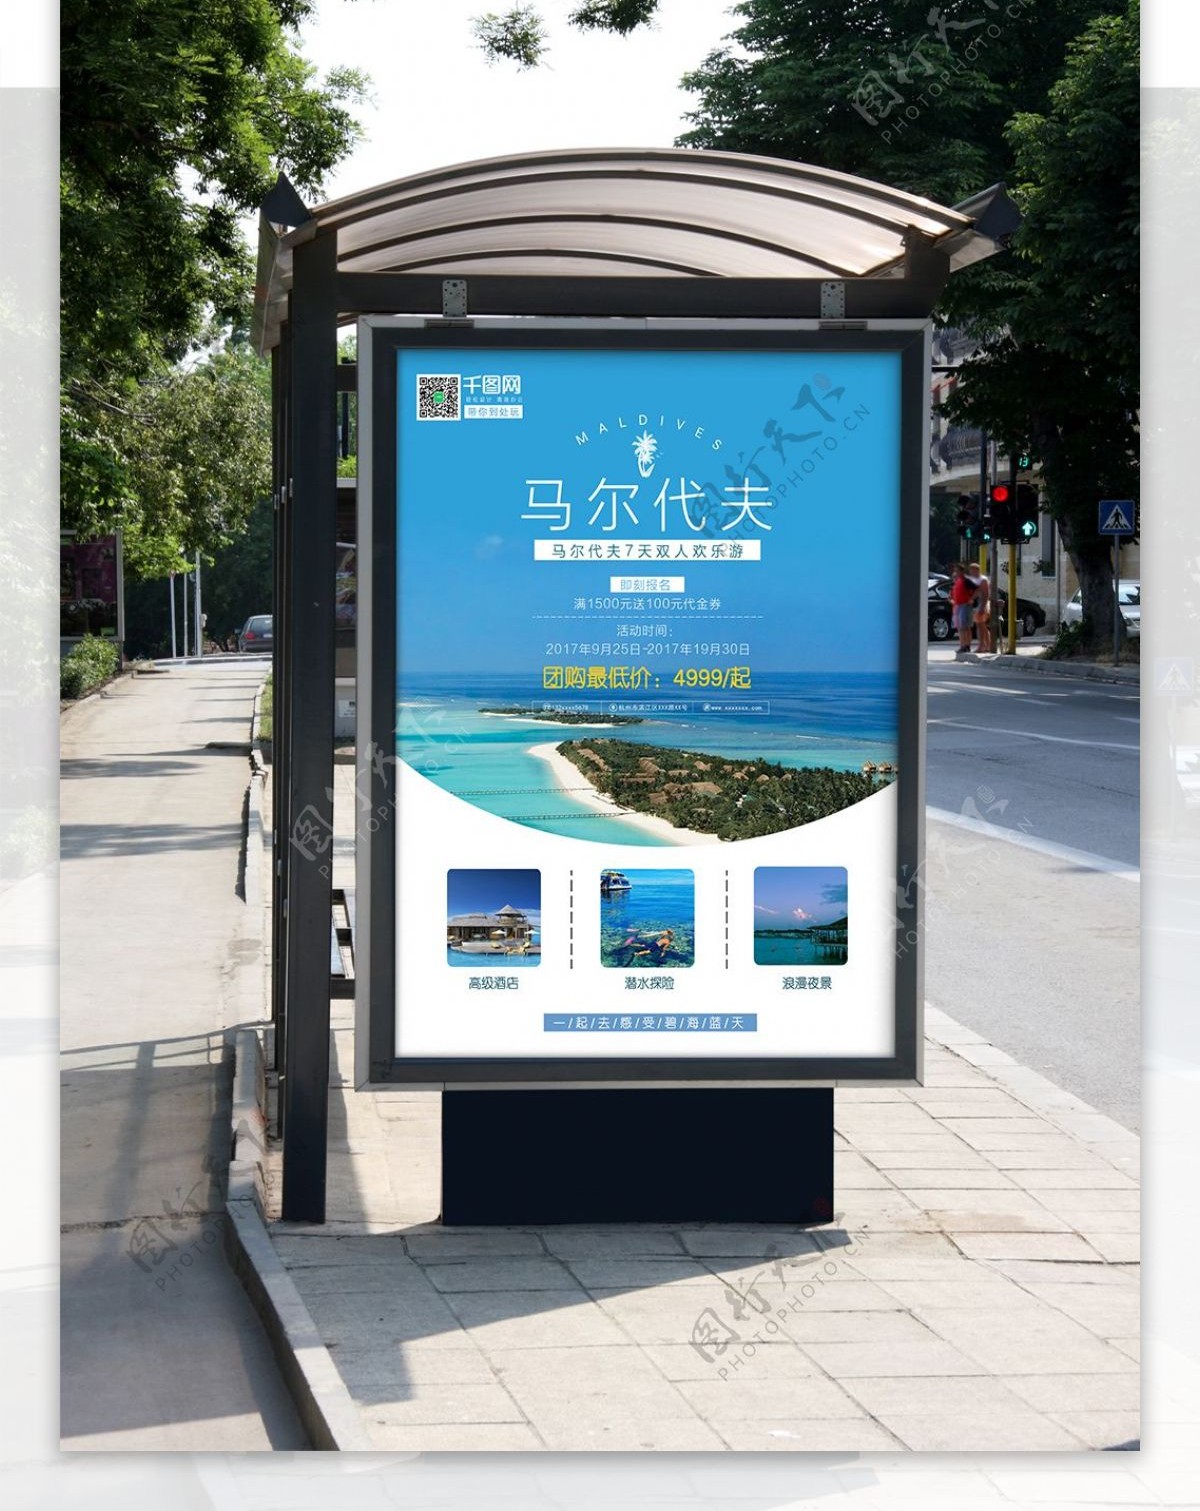 蓝色清新马尔代夫旅游度假海报